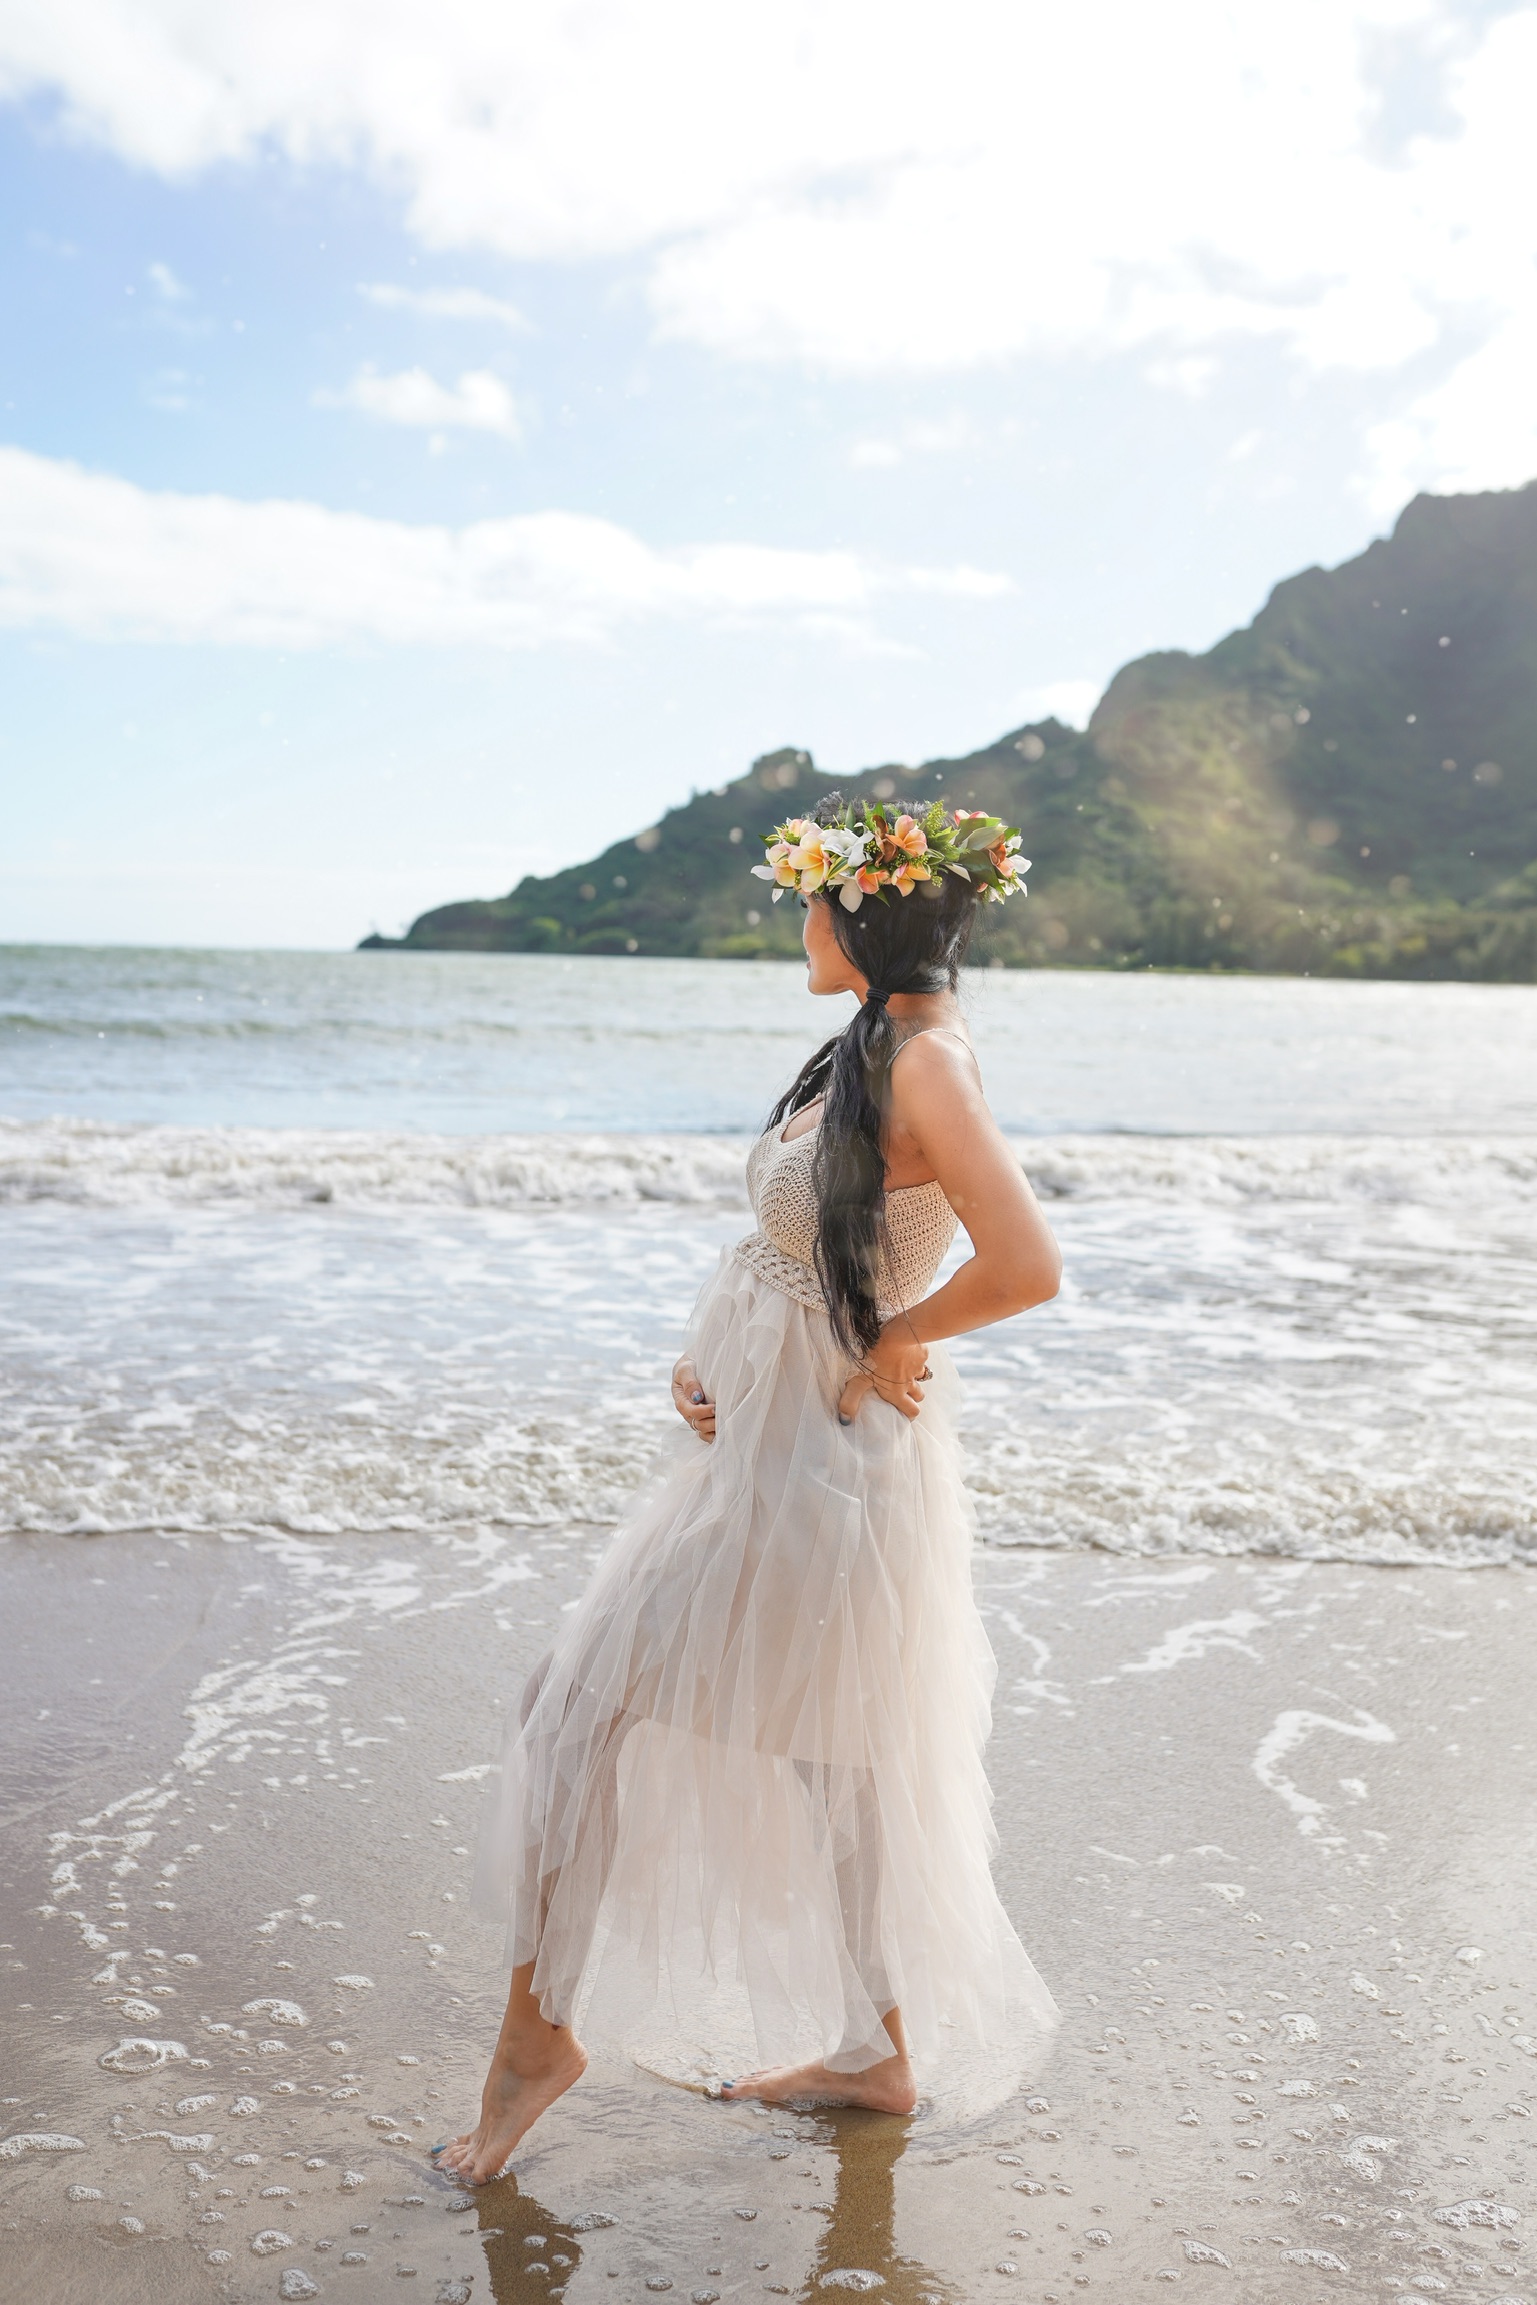 Kahana Bay Beach, Hawaii, haku lei, maternity style, maternity photoshoot 